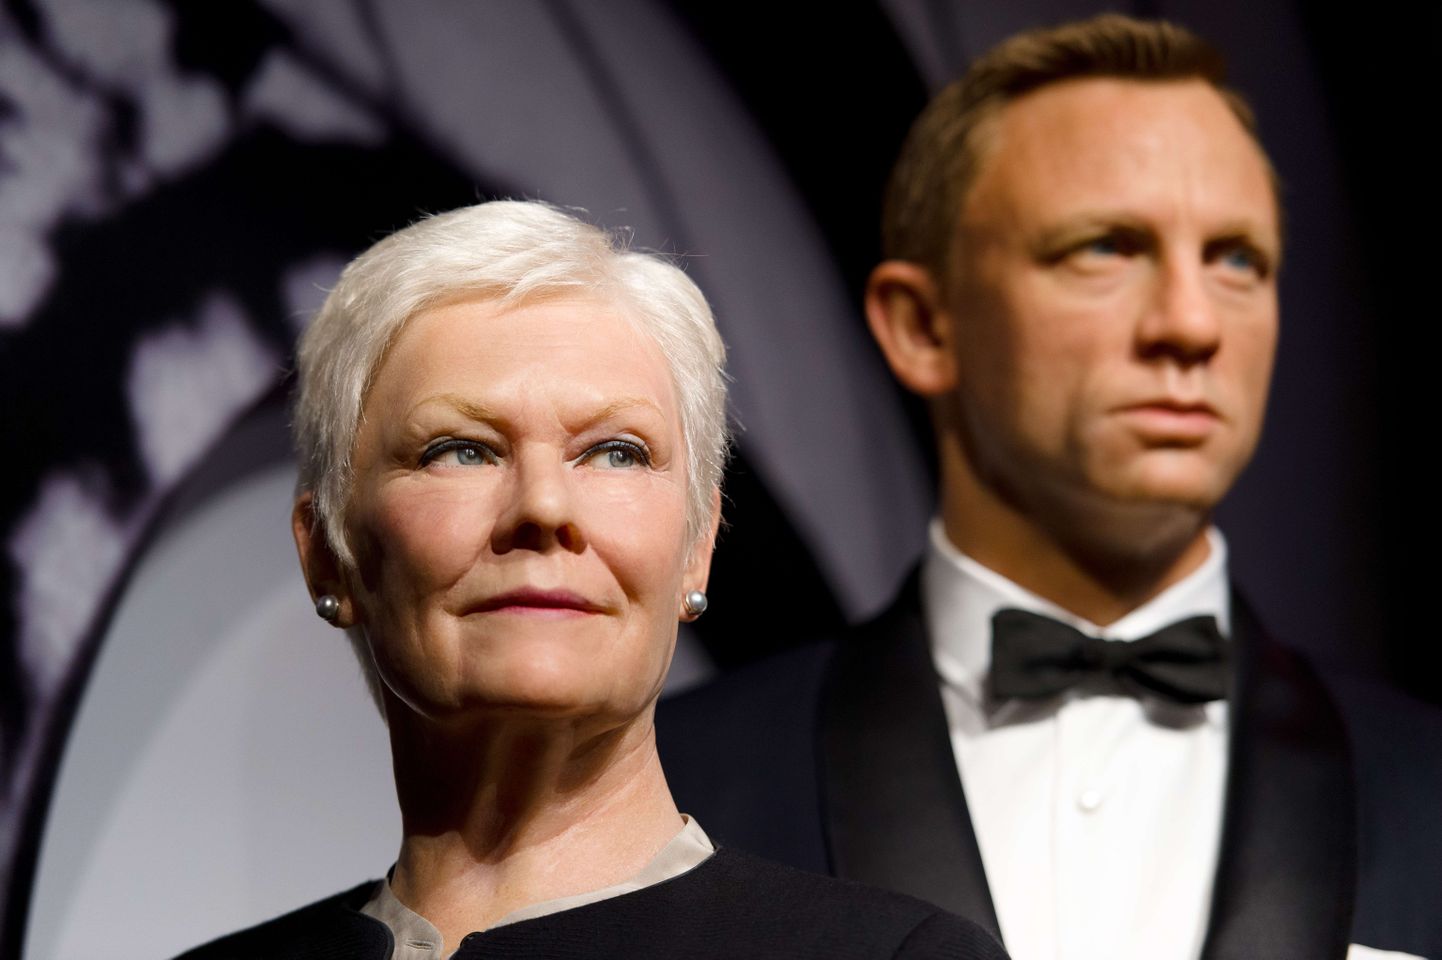 James Bondi filmid on reklaamkaubast pungil